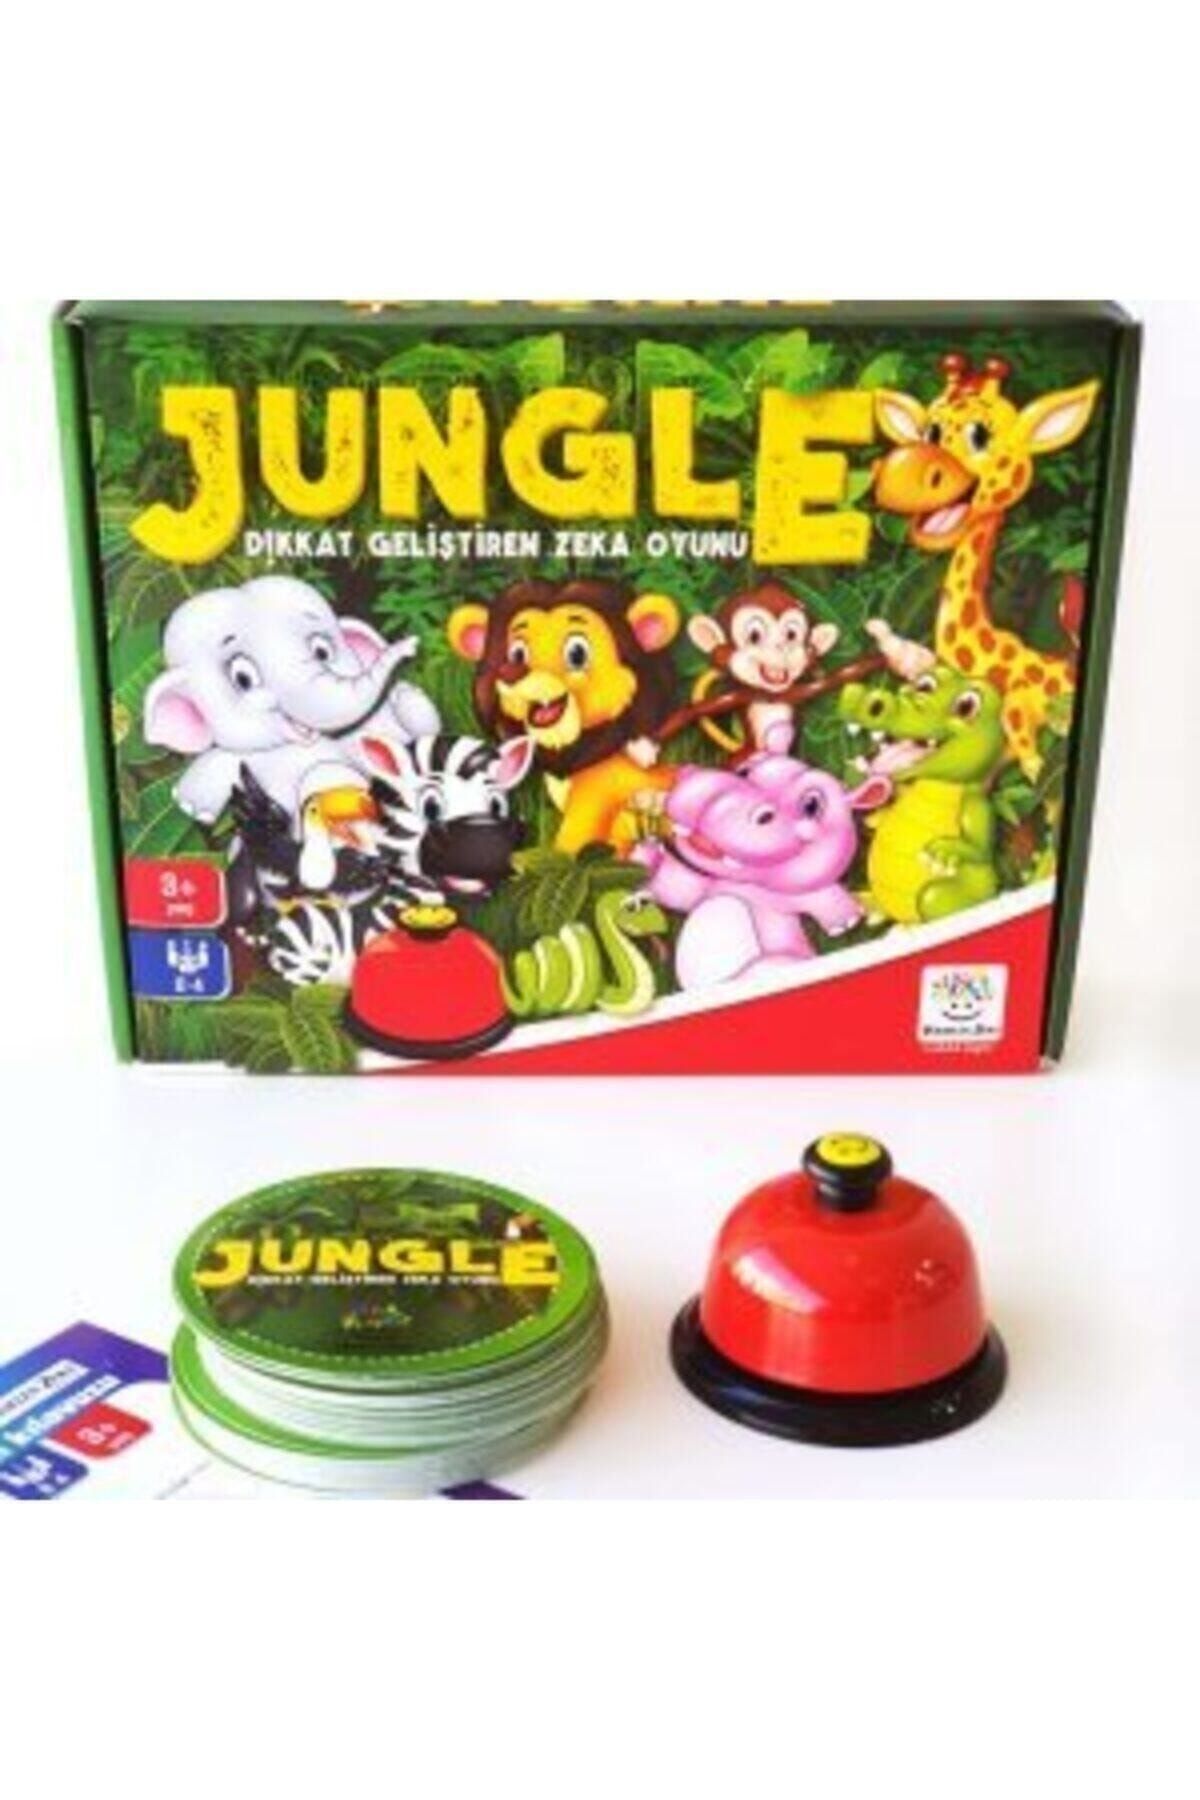 Jungle Dikkat Geliştiren Zeka Oyunu 3 Yaş Ve Üzeri